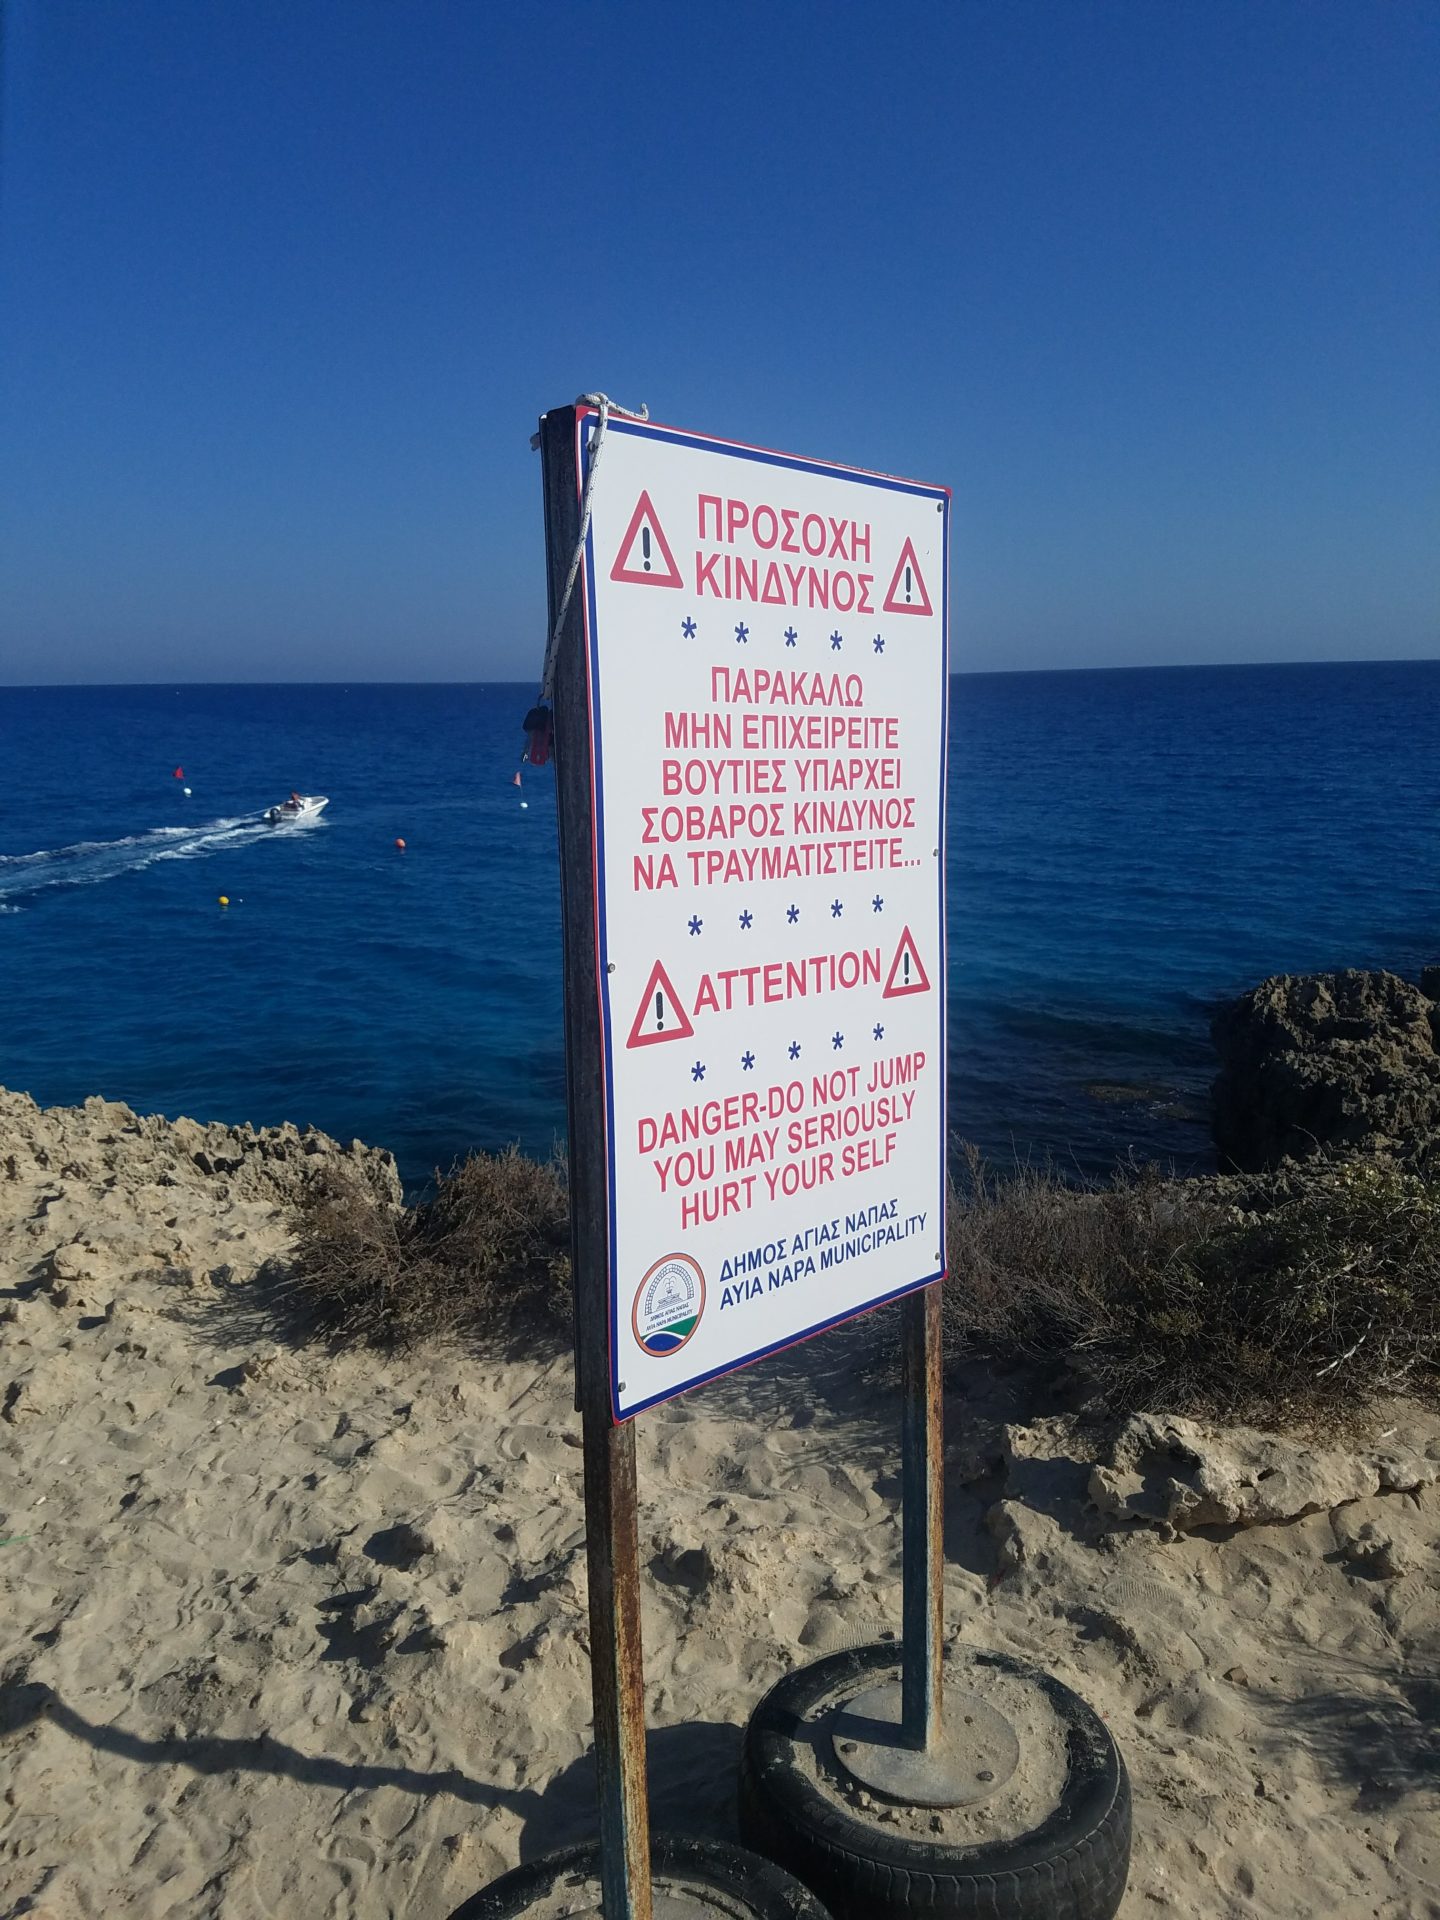 a sign on a beach